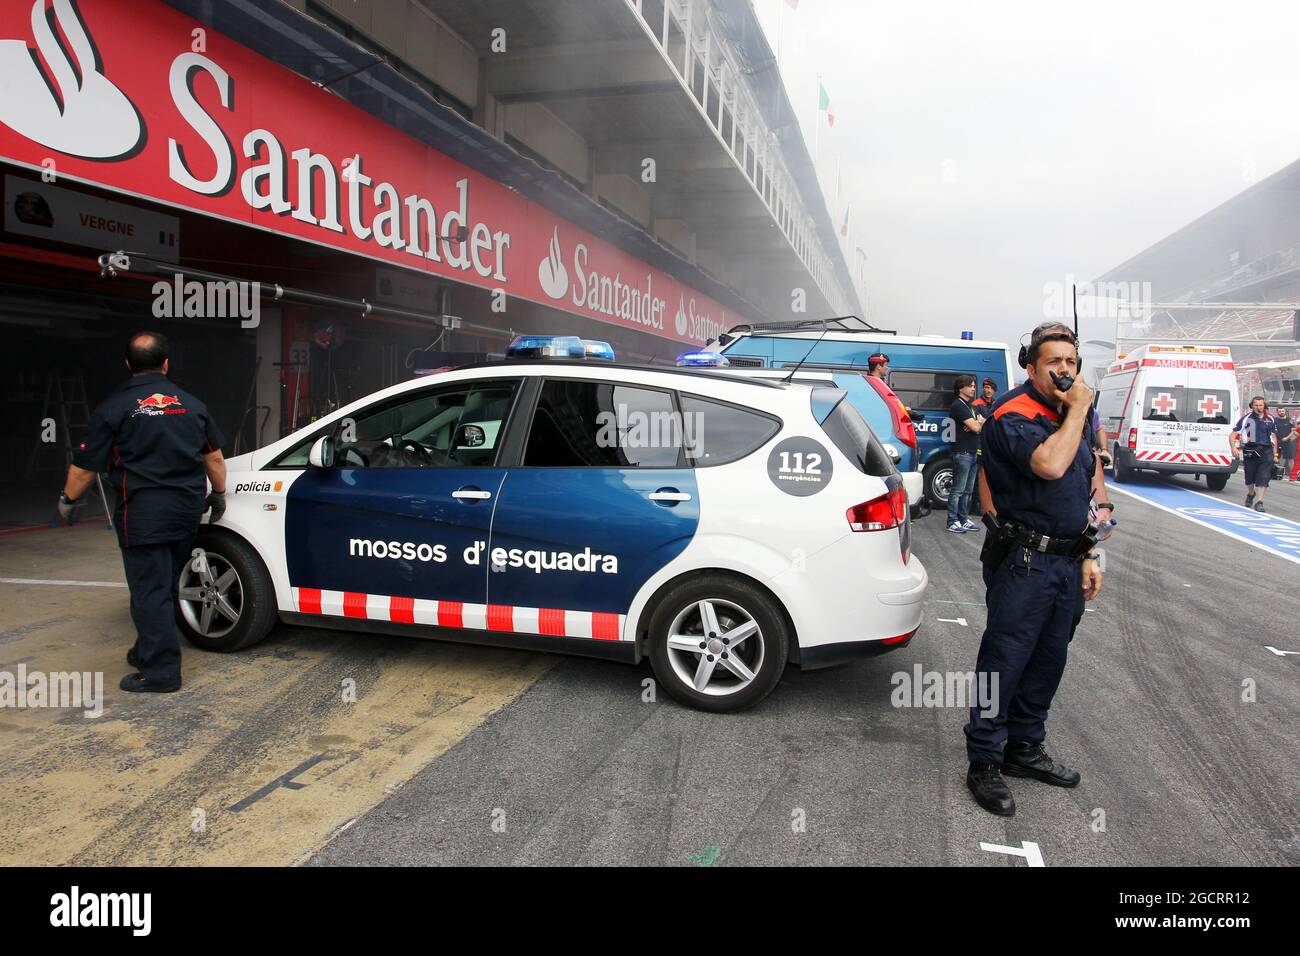 La police scelle les fosses après un feu de post-course détruit le garage de fosse Williams. Grand Prix d'Espagne, dimanche 13 mai 2012. Barcelone, Espagne. Banque D'Images